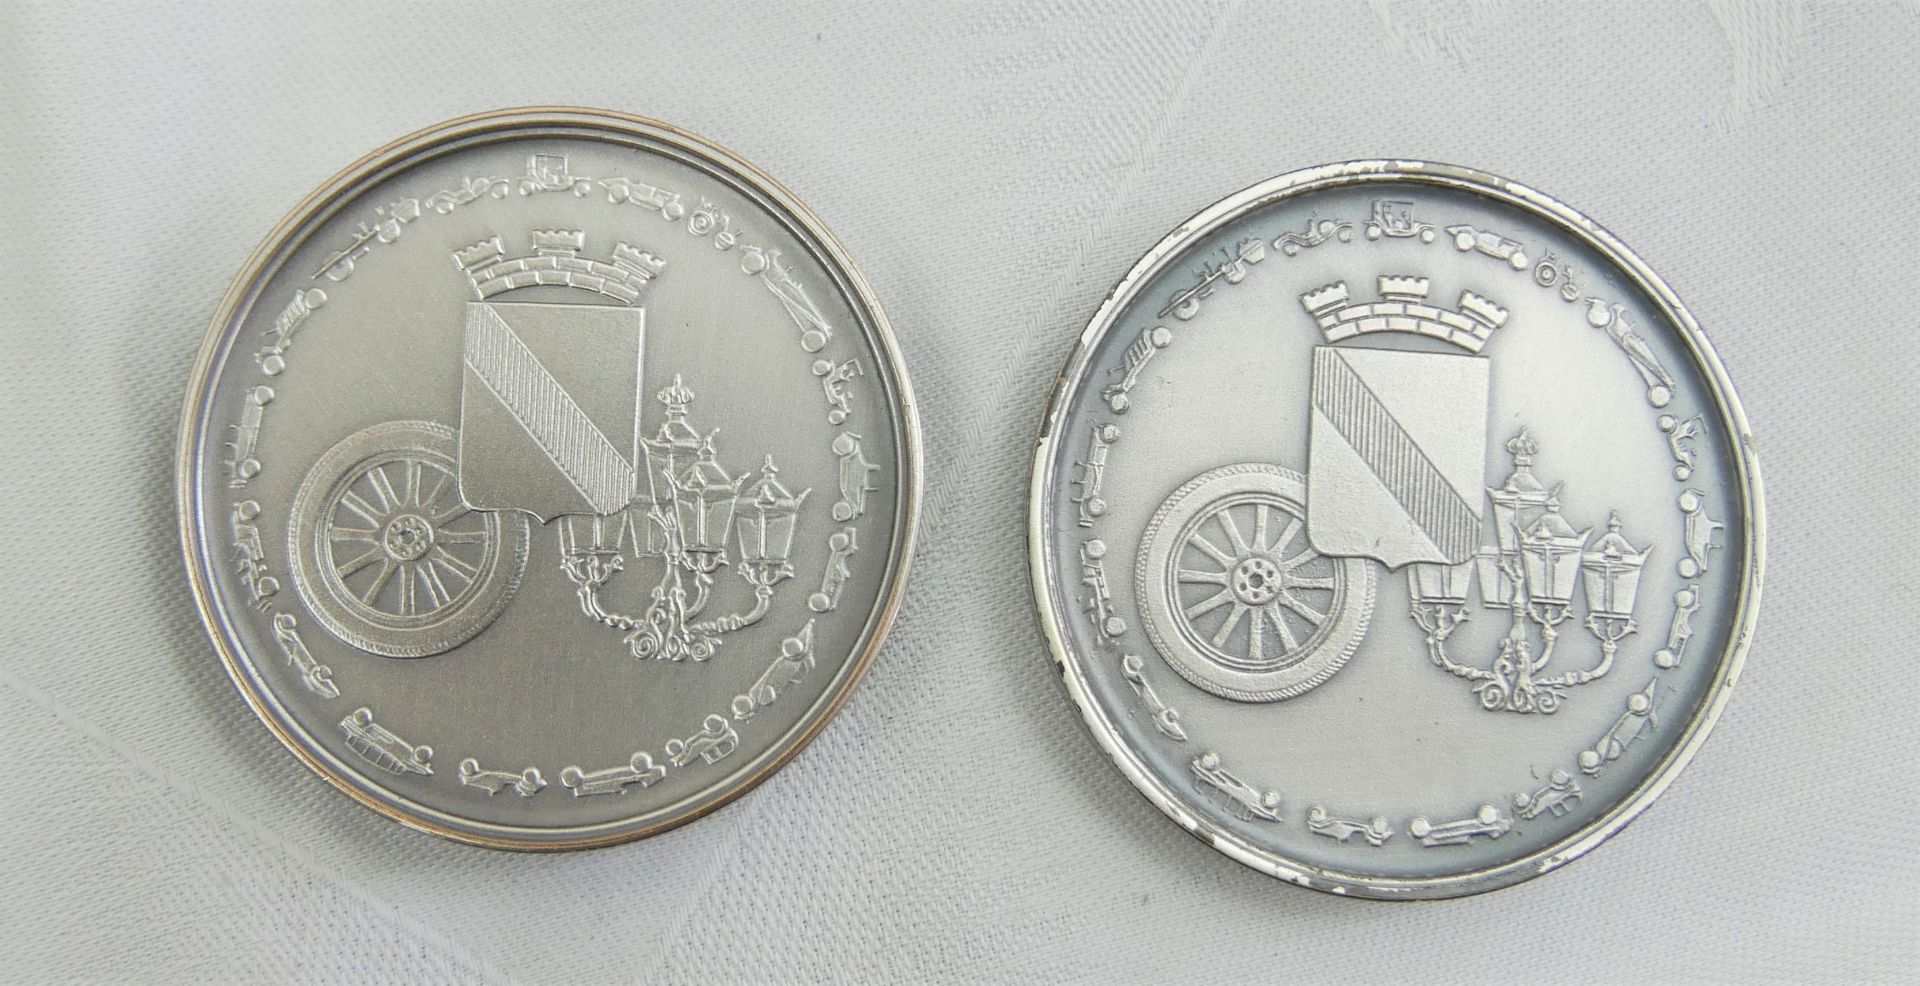 Lot Medaillen "Automobiltage Baden Baden" mit den Jahrgängen: 1992, 1993, 1996, 1997, 1998, 1999, - Bild 3 aus 3